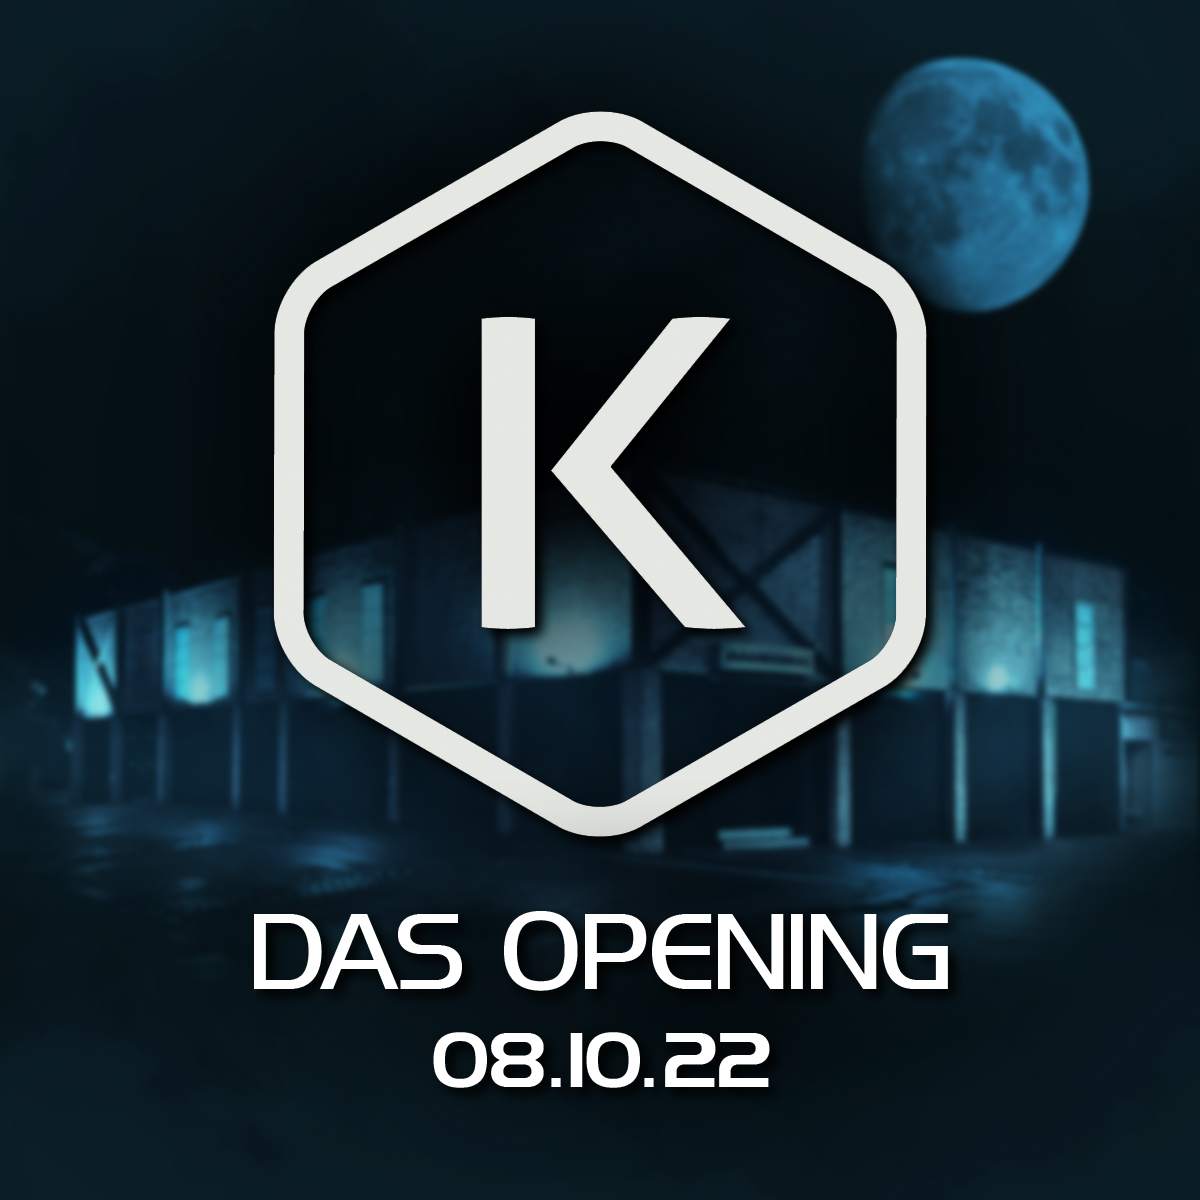 Die Kantine - Das Opening - フライヤー表